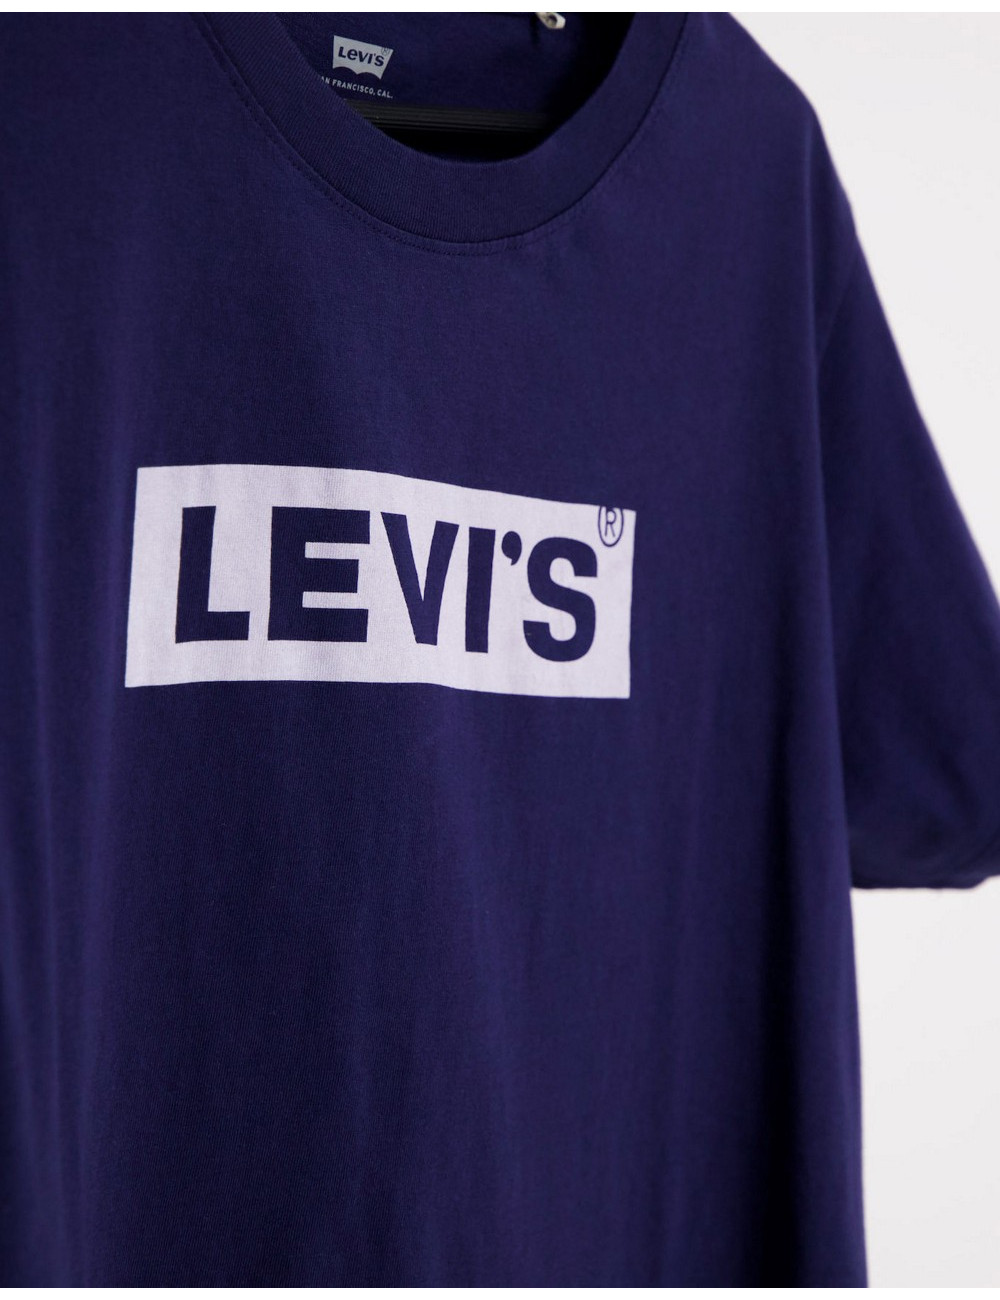 Levi's varsity logo t-shirt...